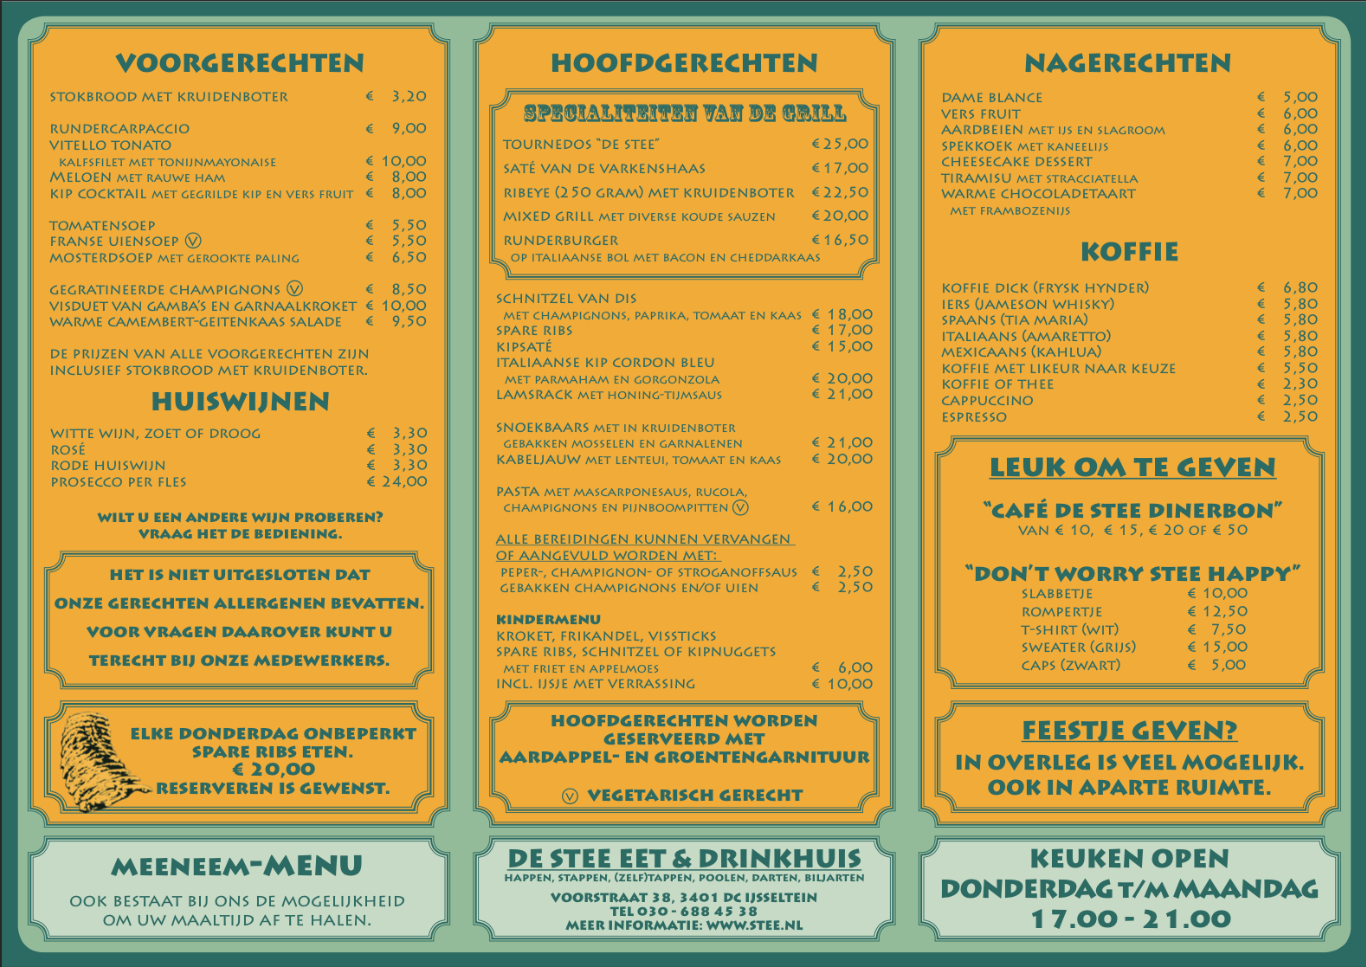 Heerlijk uit eten in IJsselstein doe je in De Stee, bekijk onze menukaart